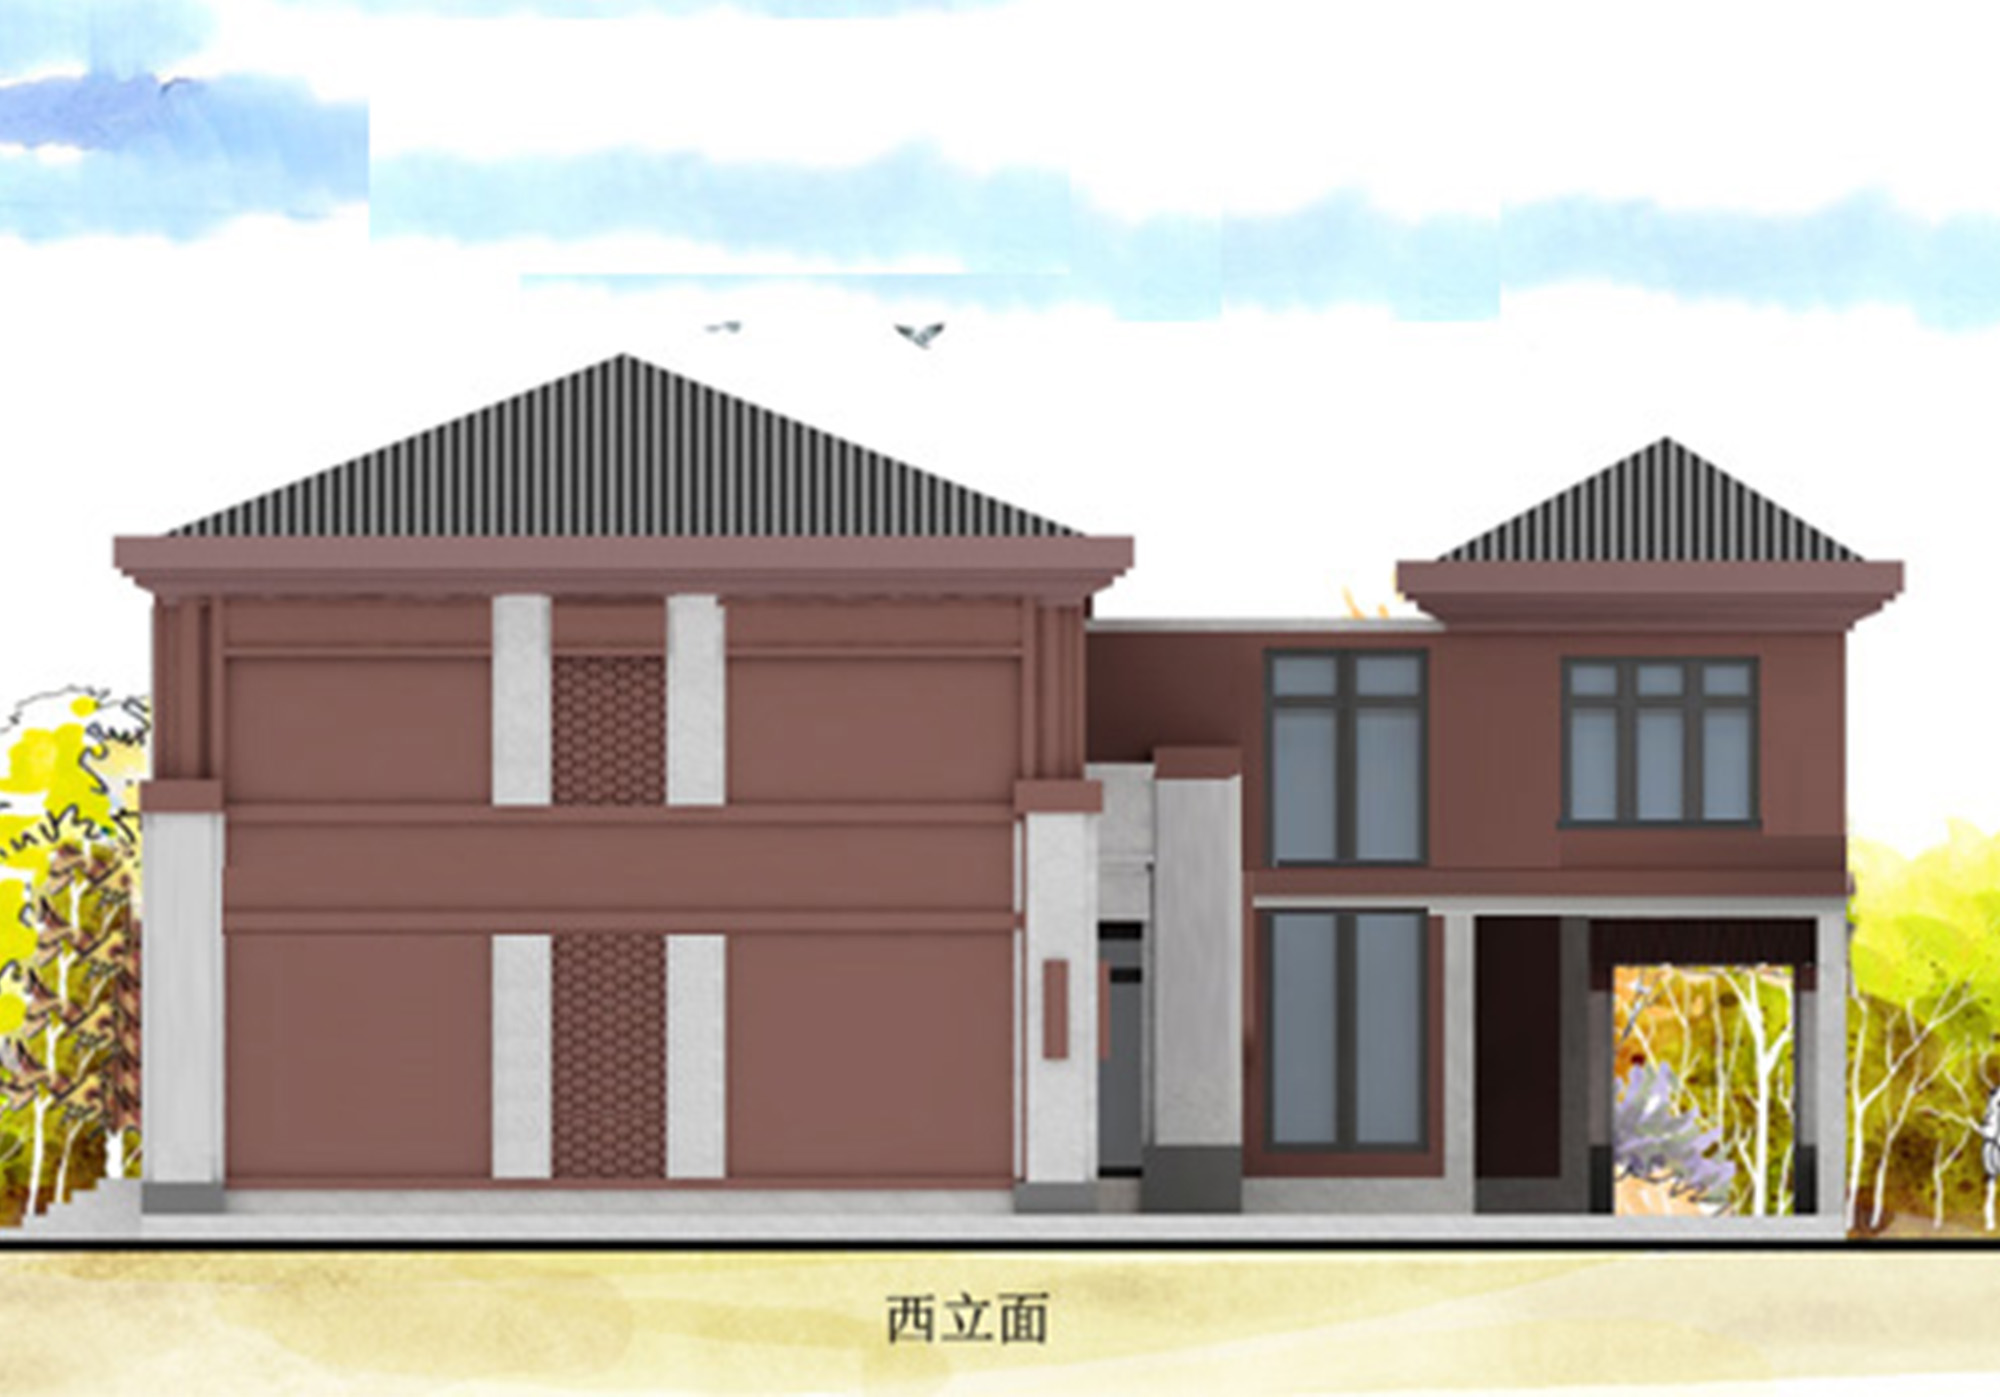 B750【七字形房子设计图】带小院的两层新中式别墅设计图，外观好看